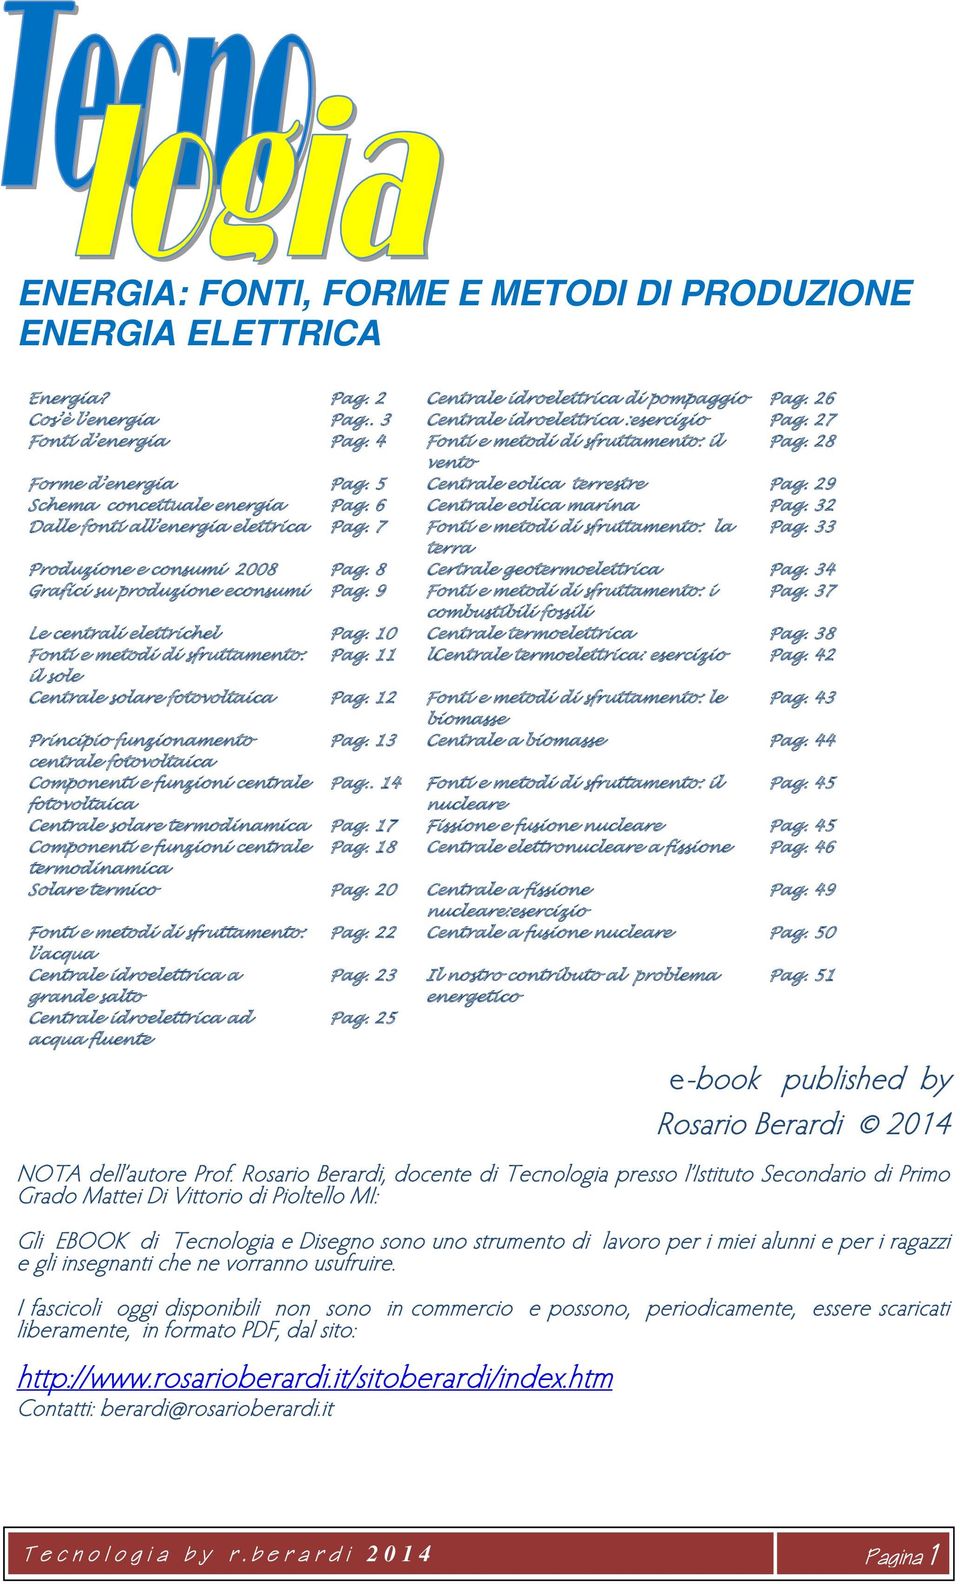 32 Dalle fonti all energia elettrica Pag. 7 Fonti e metodi di sfruttamento: la Pag. 33 terra Produzione e consumi 2008 Pag. 8 Certrale geotermoelettrica Pag. 34 Grafici su produzione econsumi Pag.